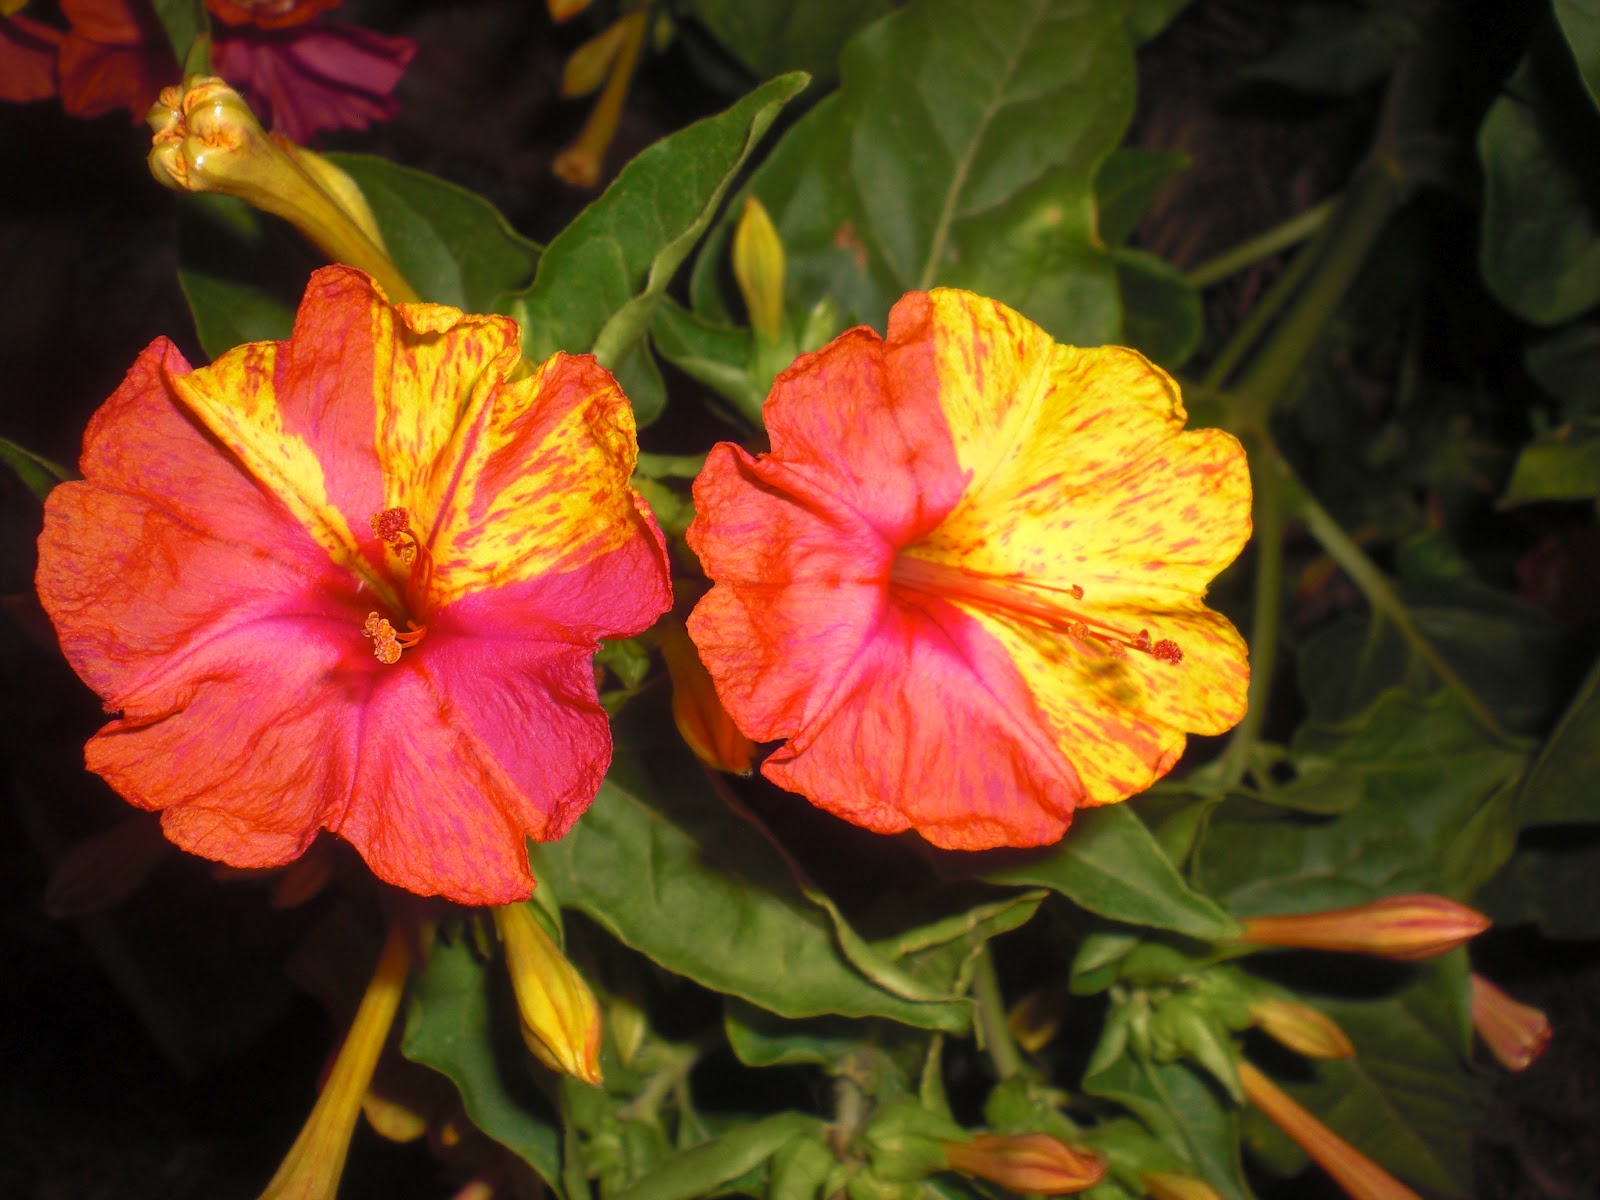 Imagenes De Flores De Varios Colores - Fotos de las flores de la Vicaria o Catharanthus roseus